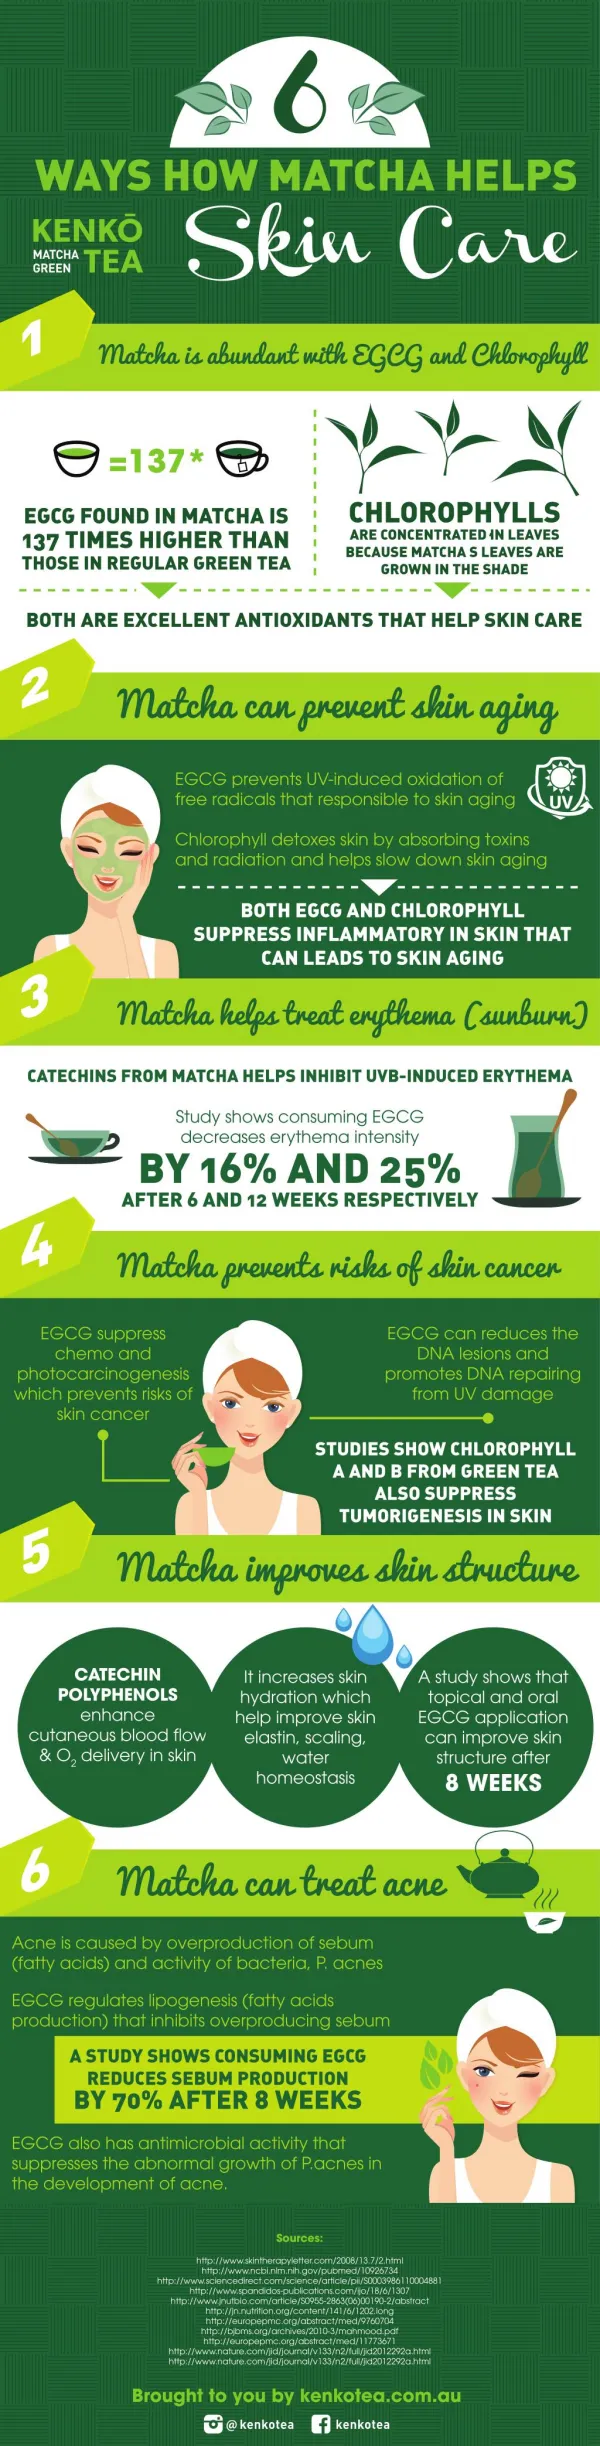 6 Ways How Matcha Helps Skin Care http://www.kenkotea.com.au/